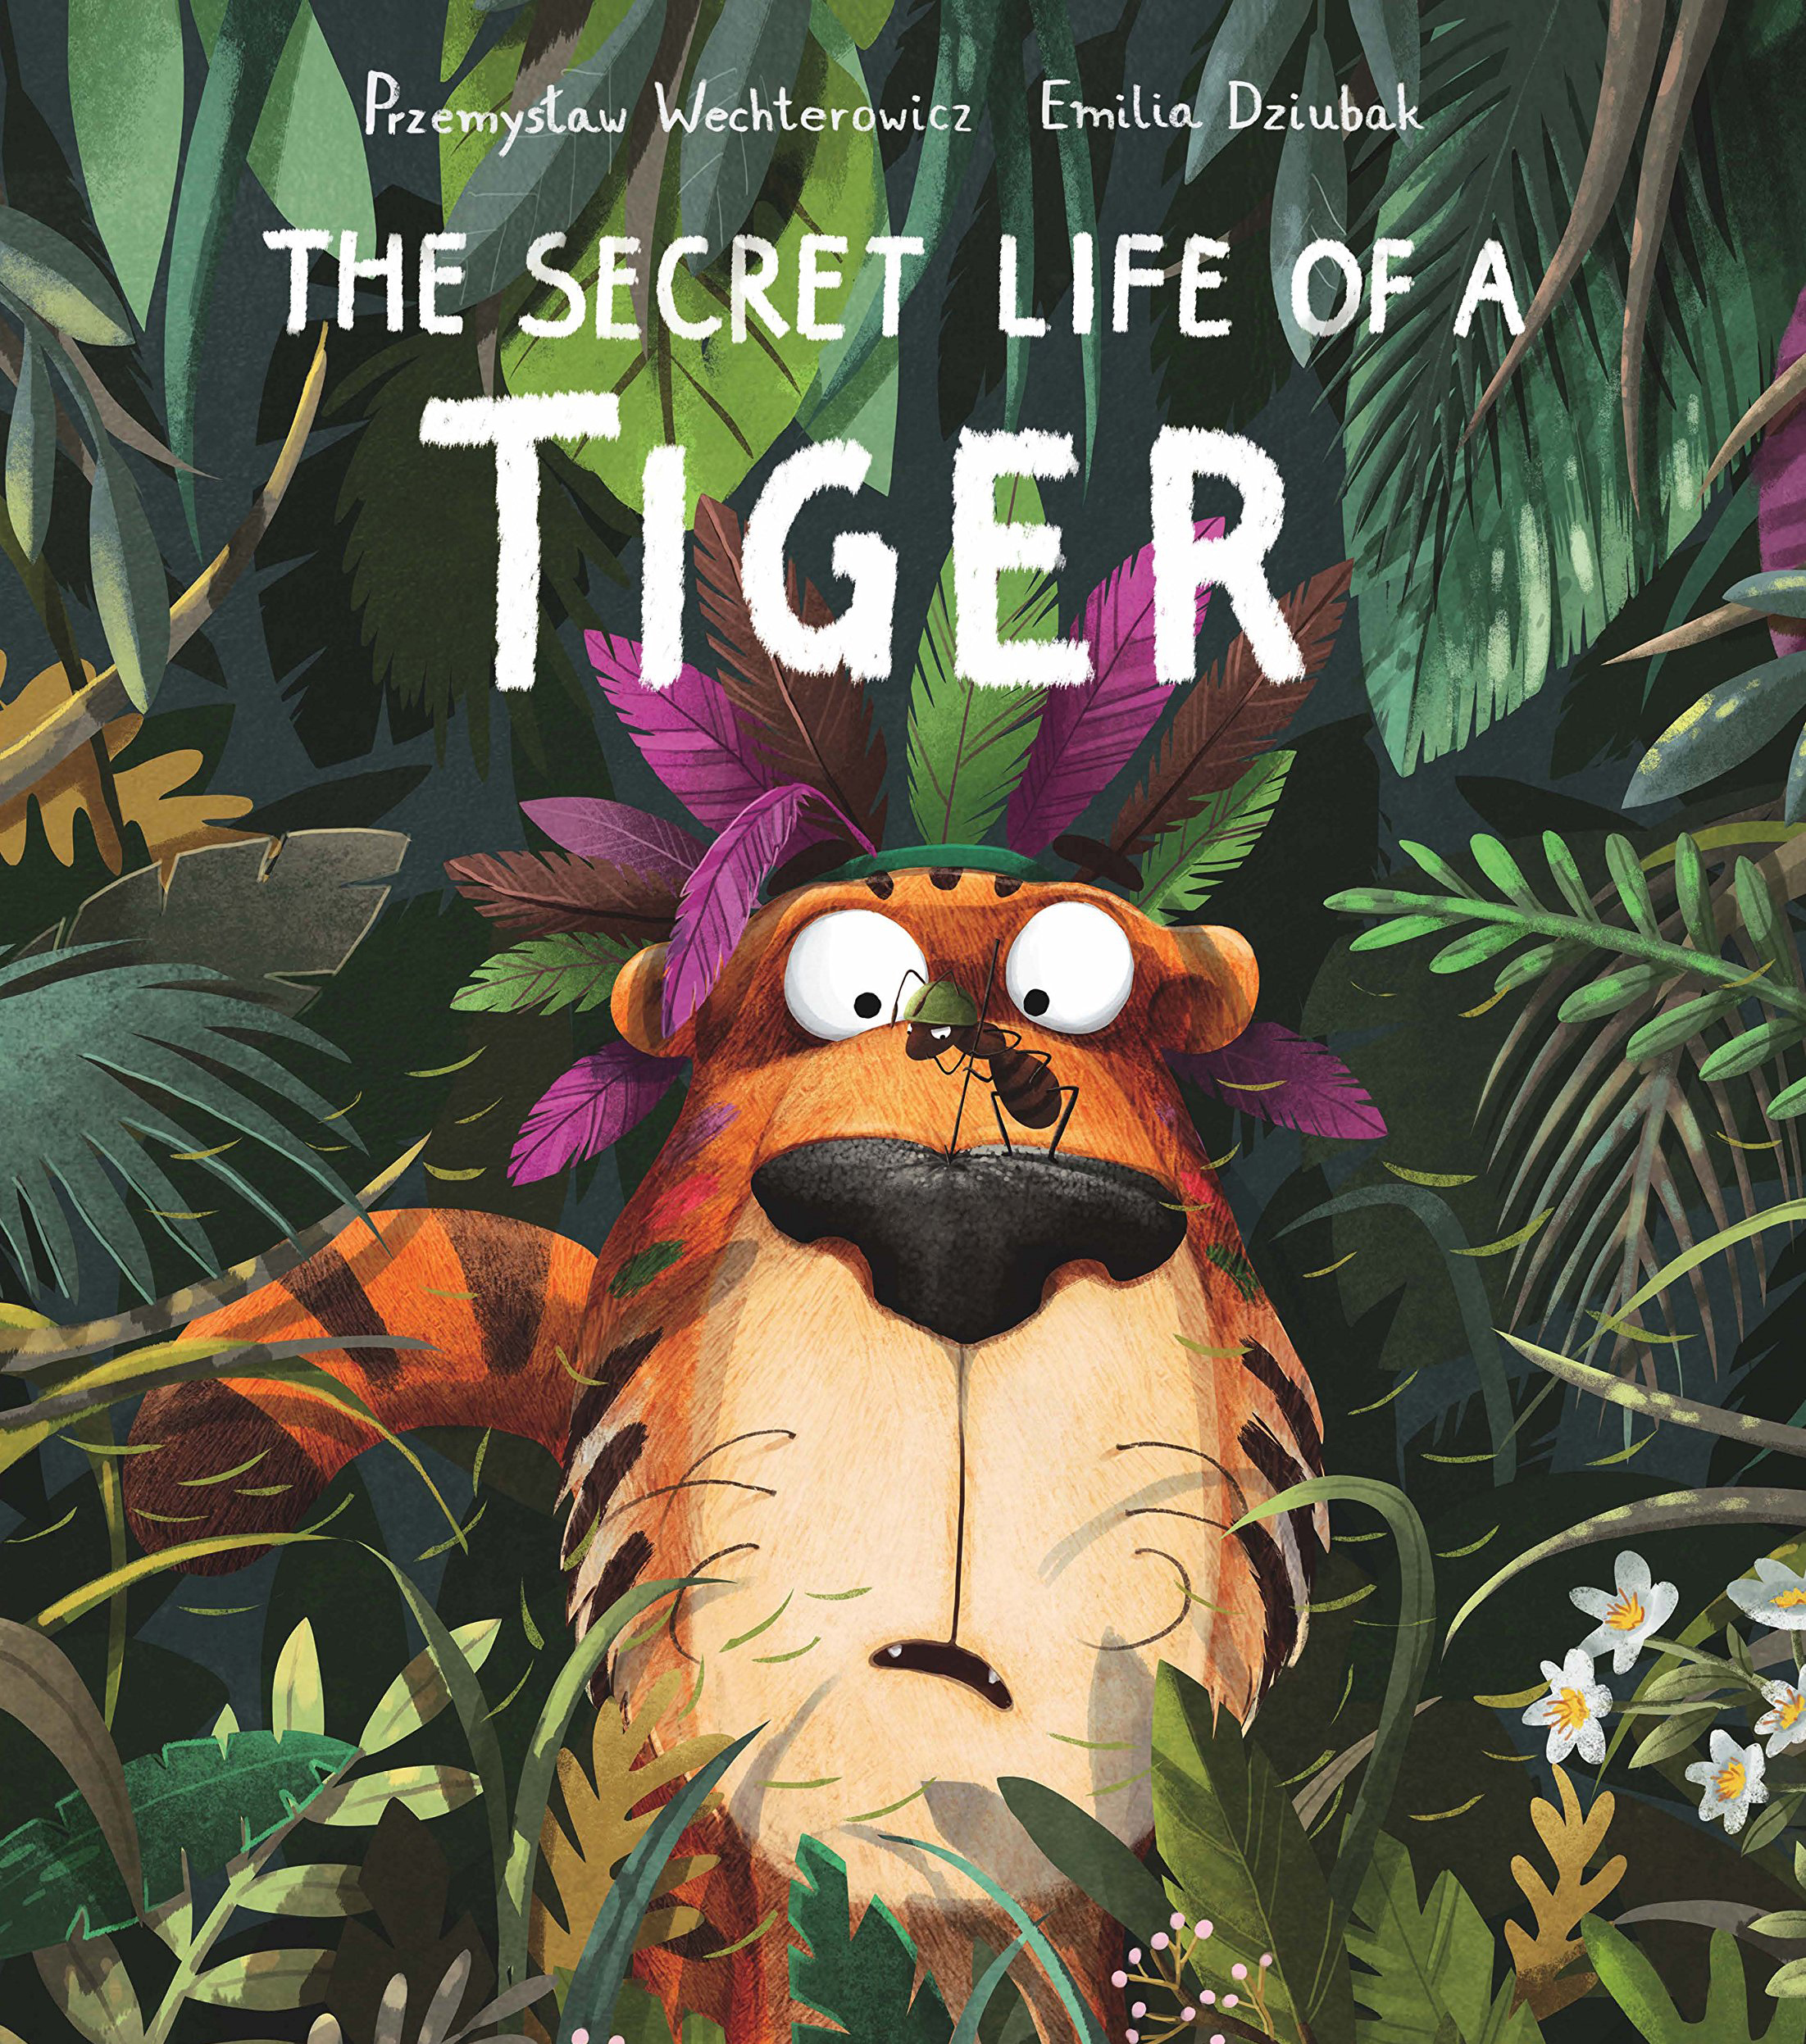 The Secret Life of a Tiger